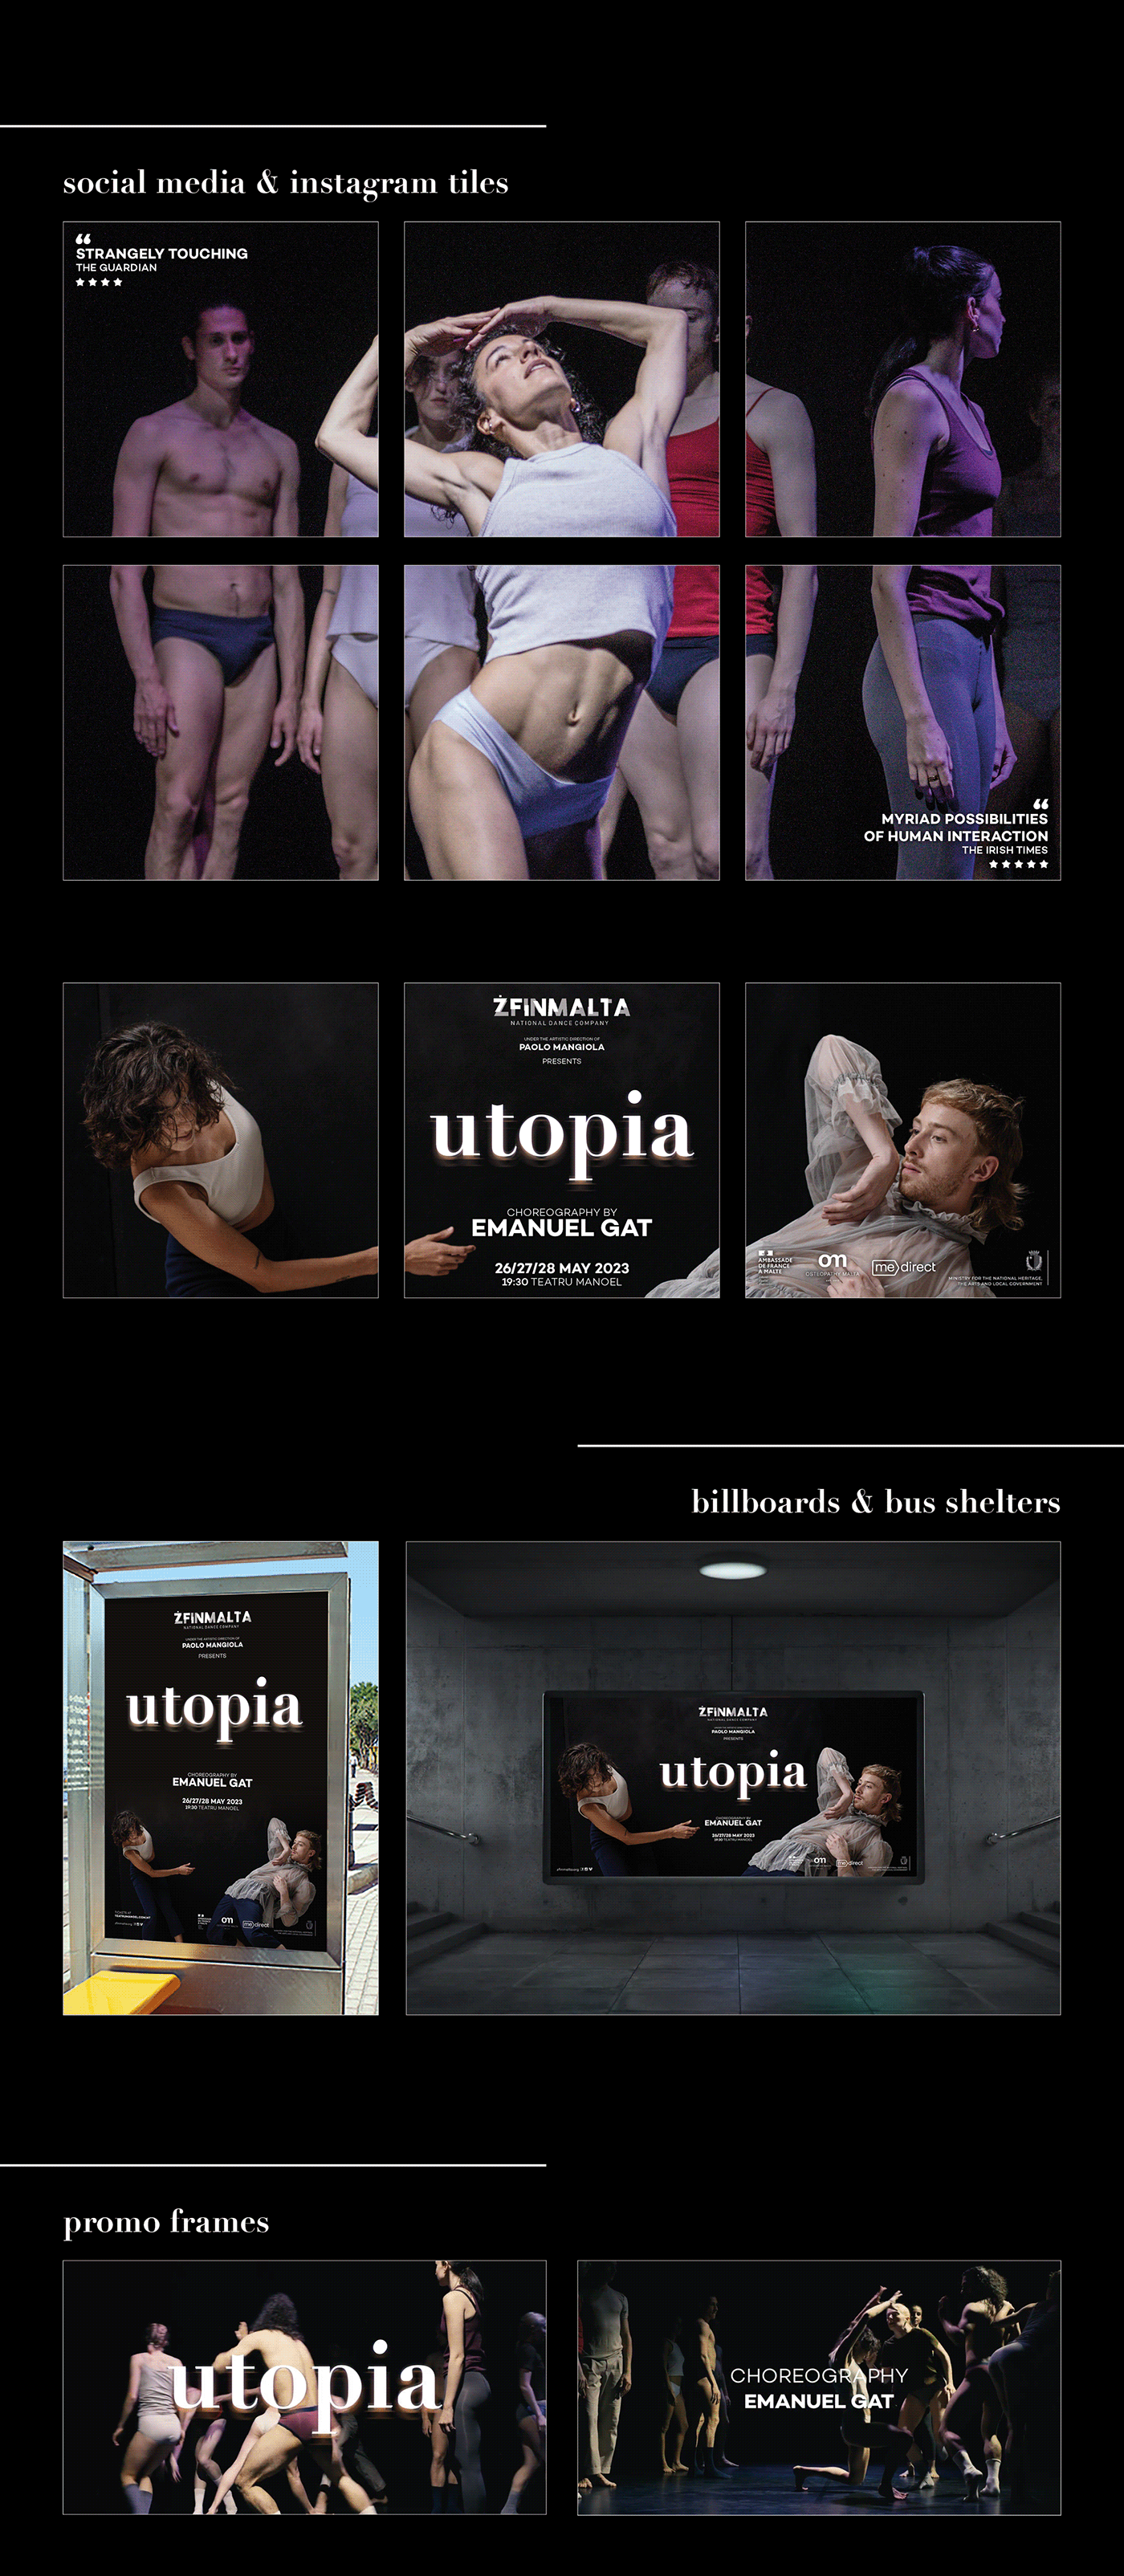 utopia malta design campaign designer ads zfinmalta